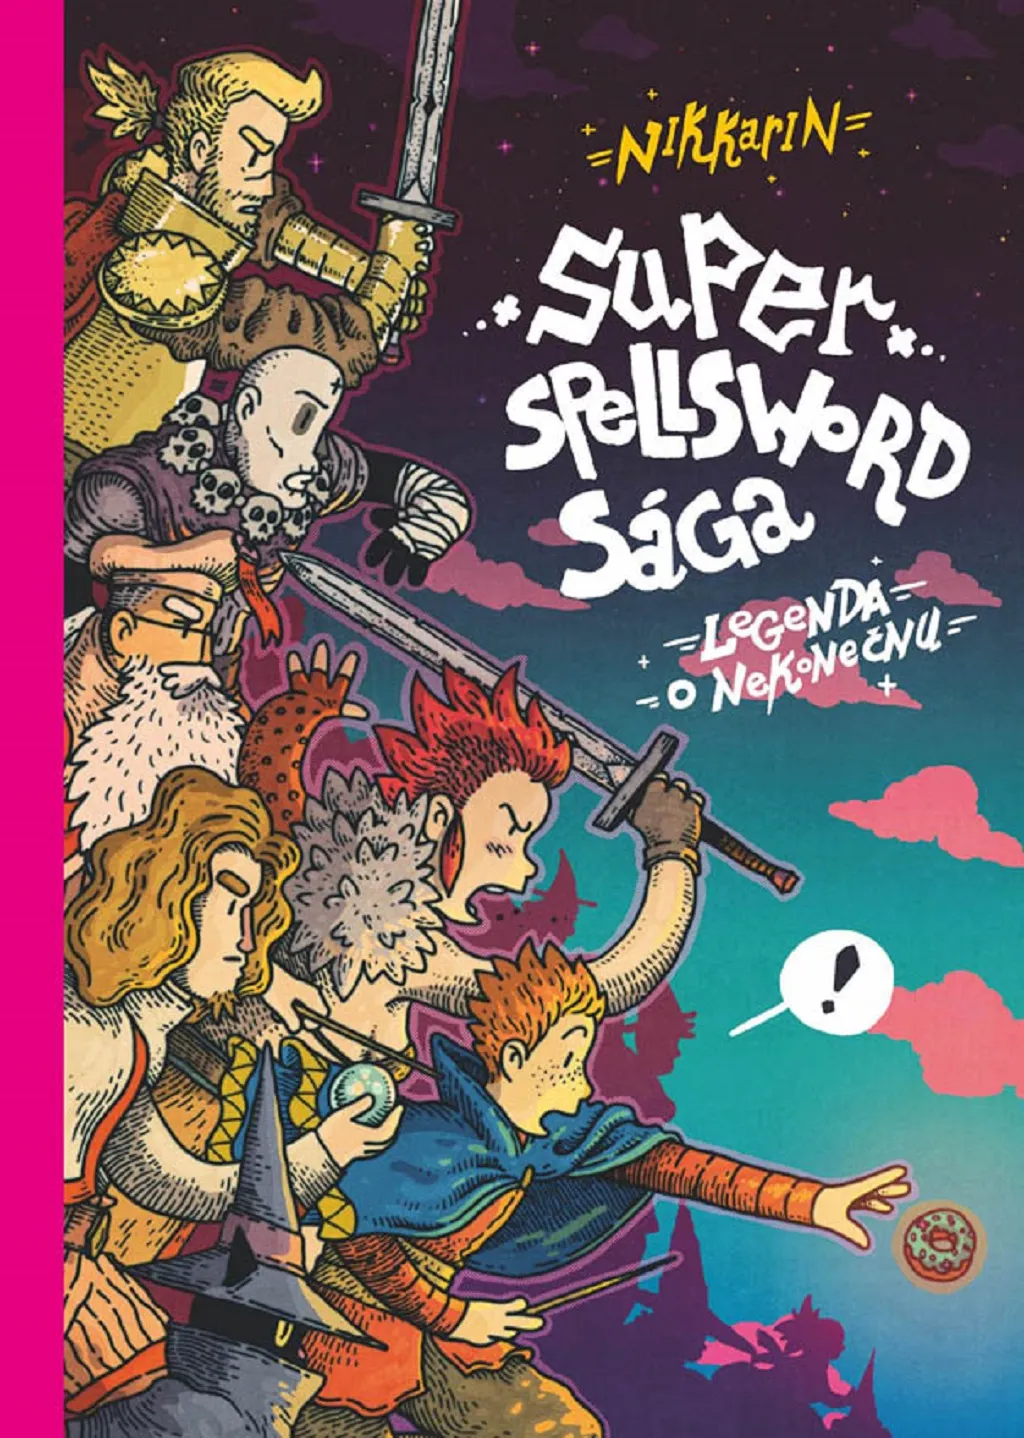 Komiksová porota vybrala z nominovaných titulů knihu Super Spellsword Sága. Nikkarin, kreslíř a scenárista v jedné osobě, předvedl podle ní  v epickém putování začínajícího mága suverénní práci s komiksovým jazykem a jeho dílo by obstálo i ve světové konkurenci